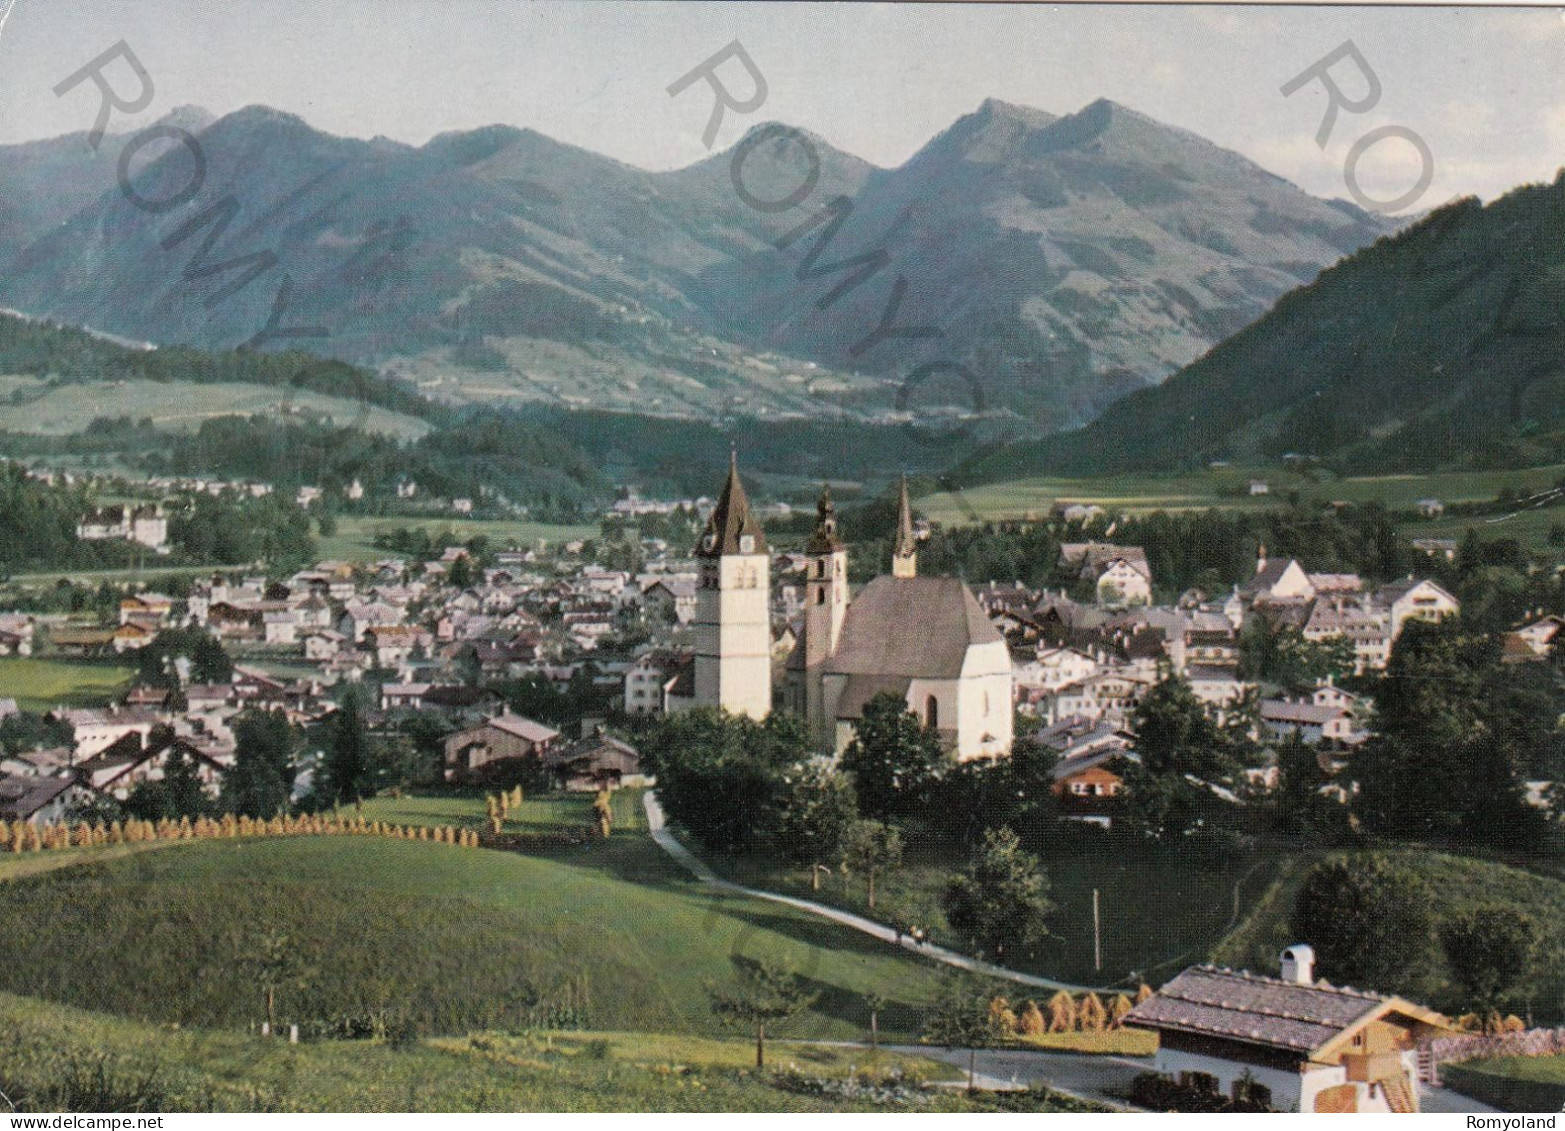 CARTOLINA  B16 KITZBUHEL,TIROLO,AUSTRIA-GEGEN SUDEN-NON VIAGGIATA (1959) - Kitzbühel